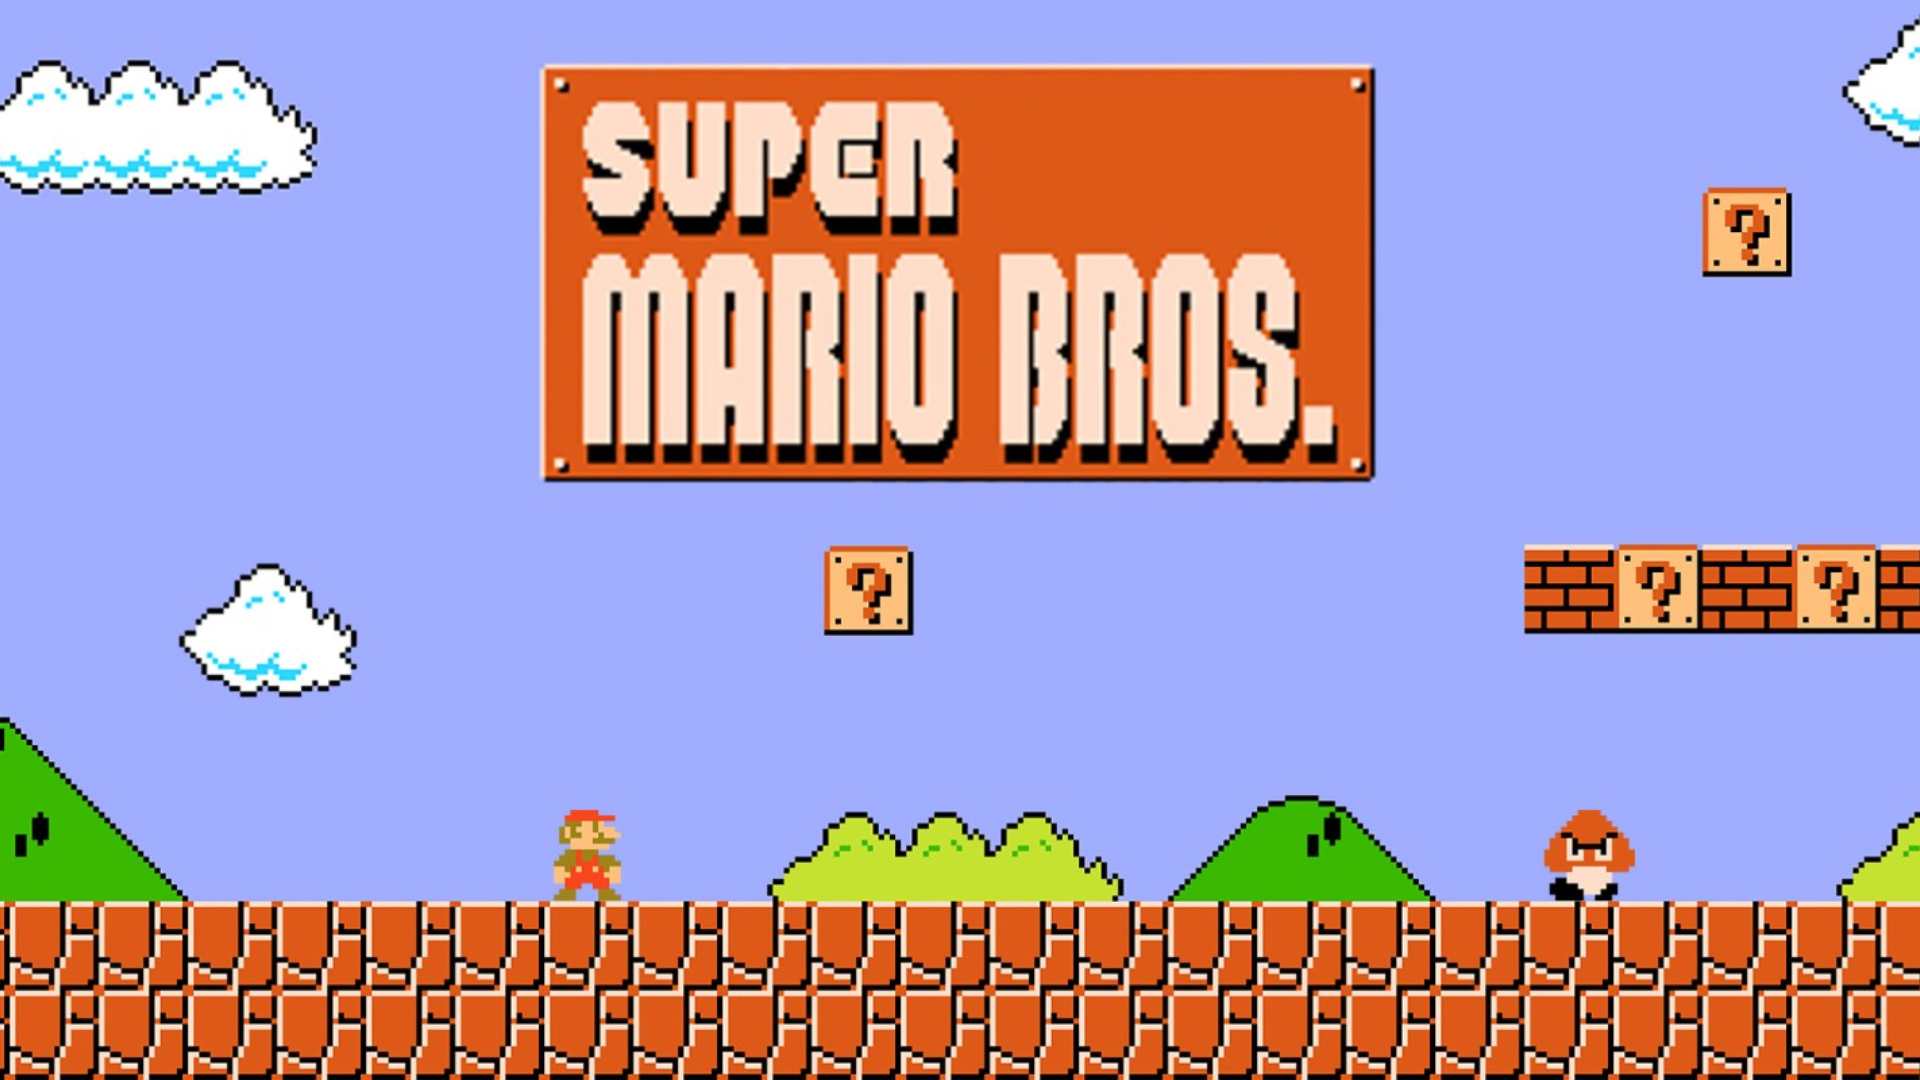 Super Mario Bros' music is iconic